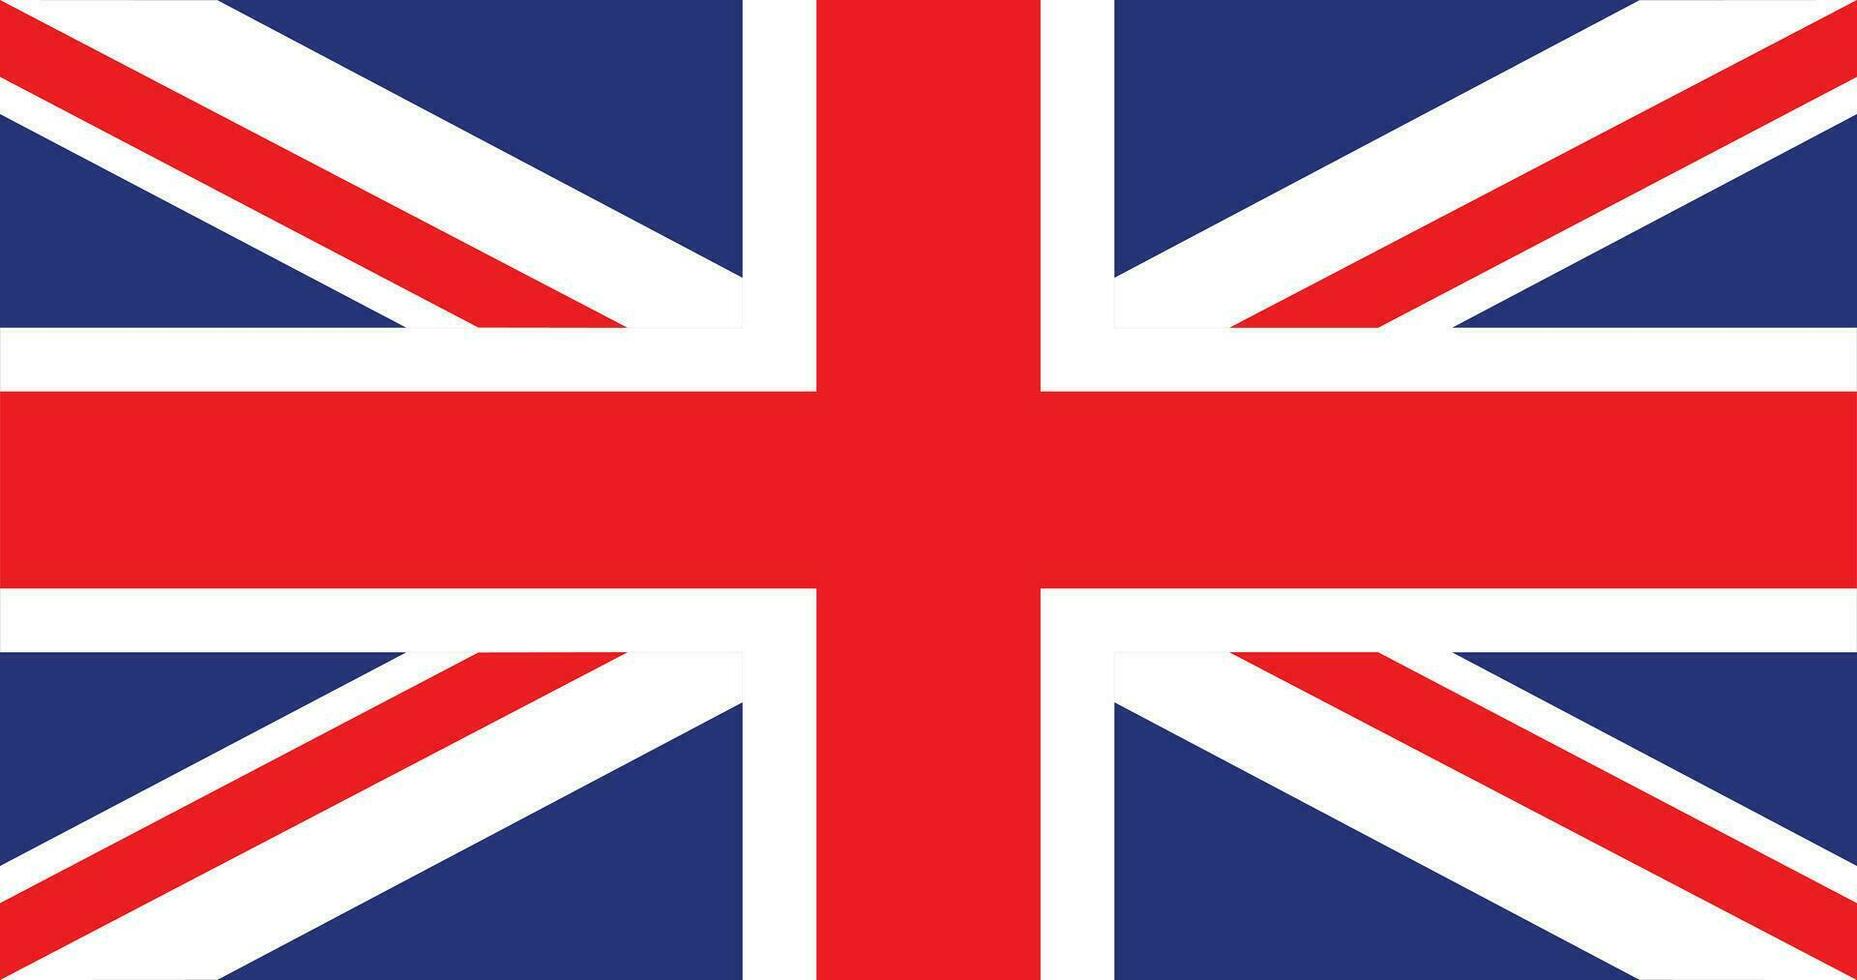 Verenigde koninkrijk vlag, vector illustratie van de Verenigde koninkrijk vlag vrij vector.